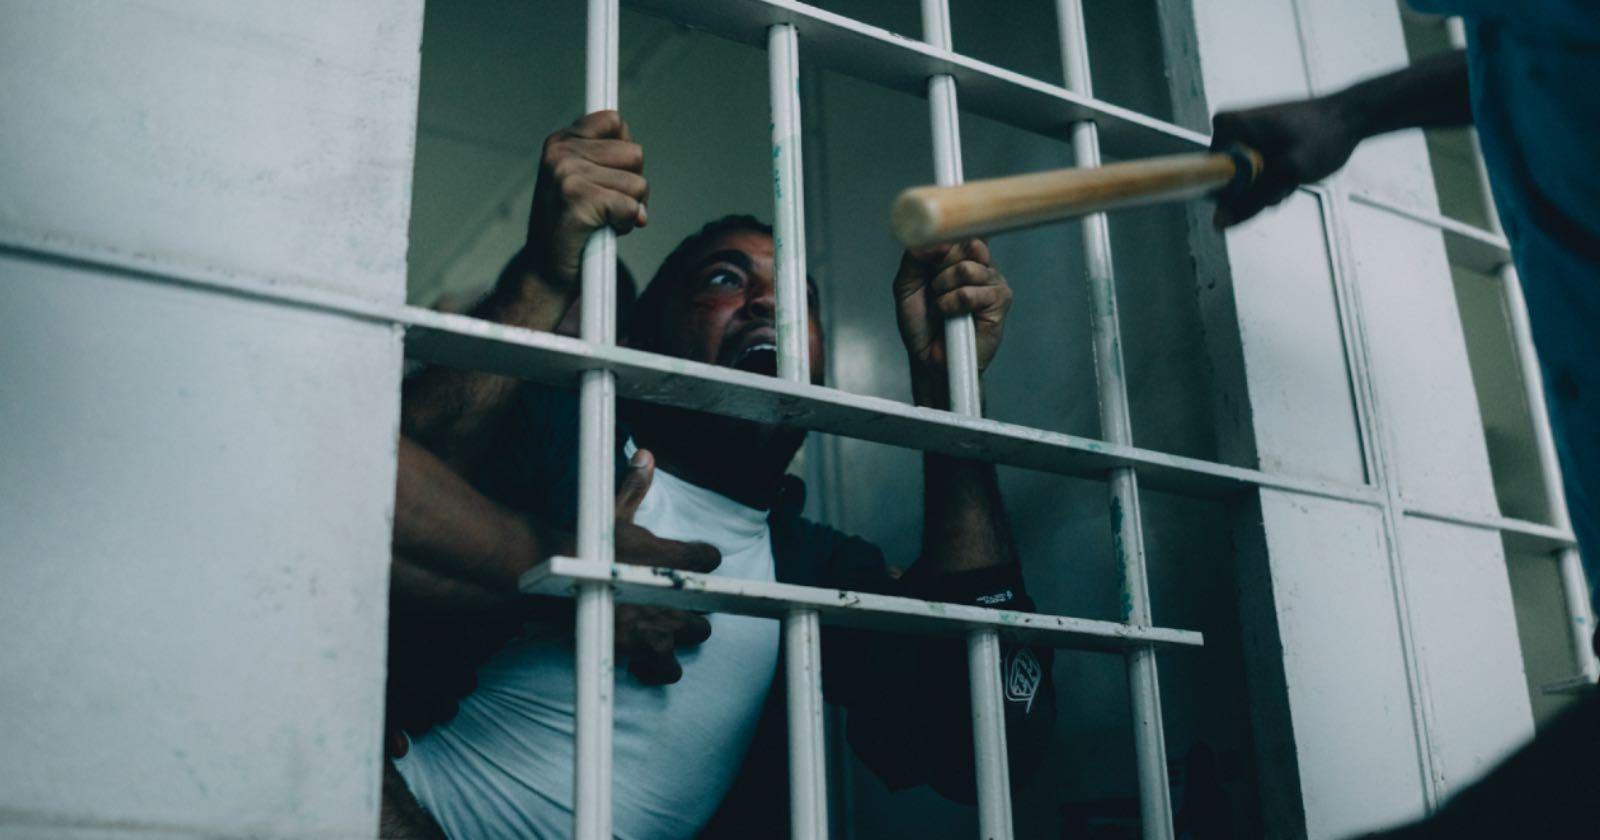 Imagen de Korey Wisey justo antes de ser brutalmente golpeado por otros internos en una cárcel de EE.UU